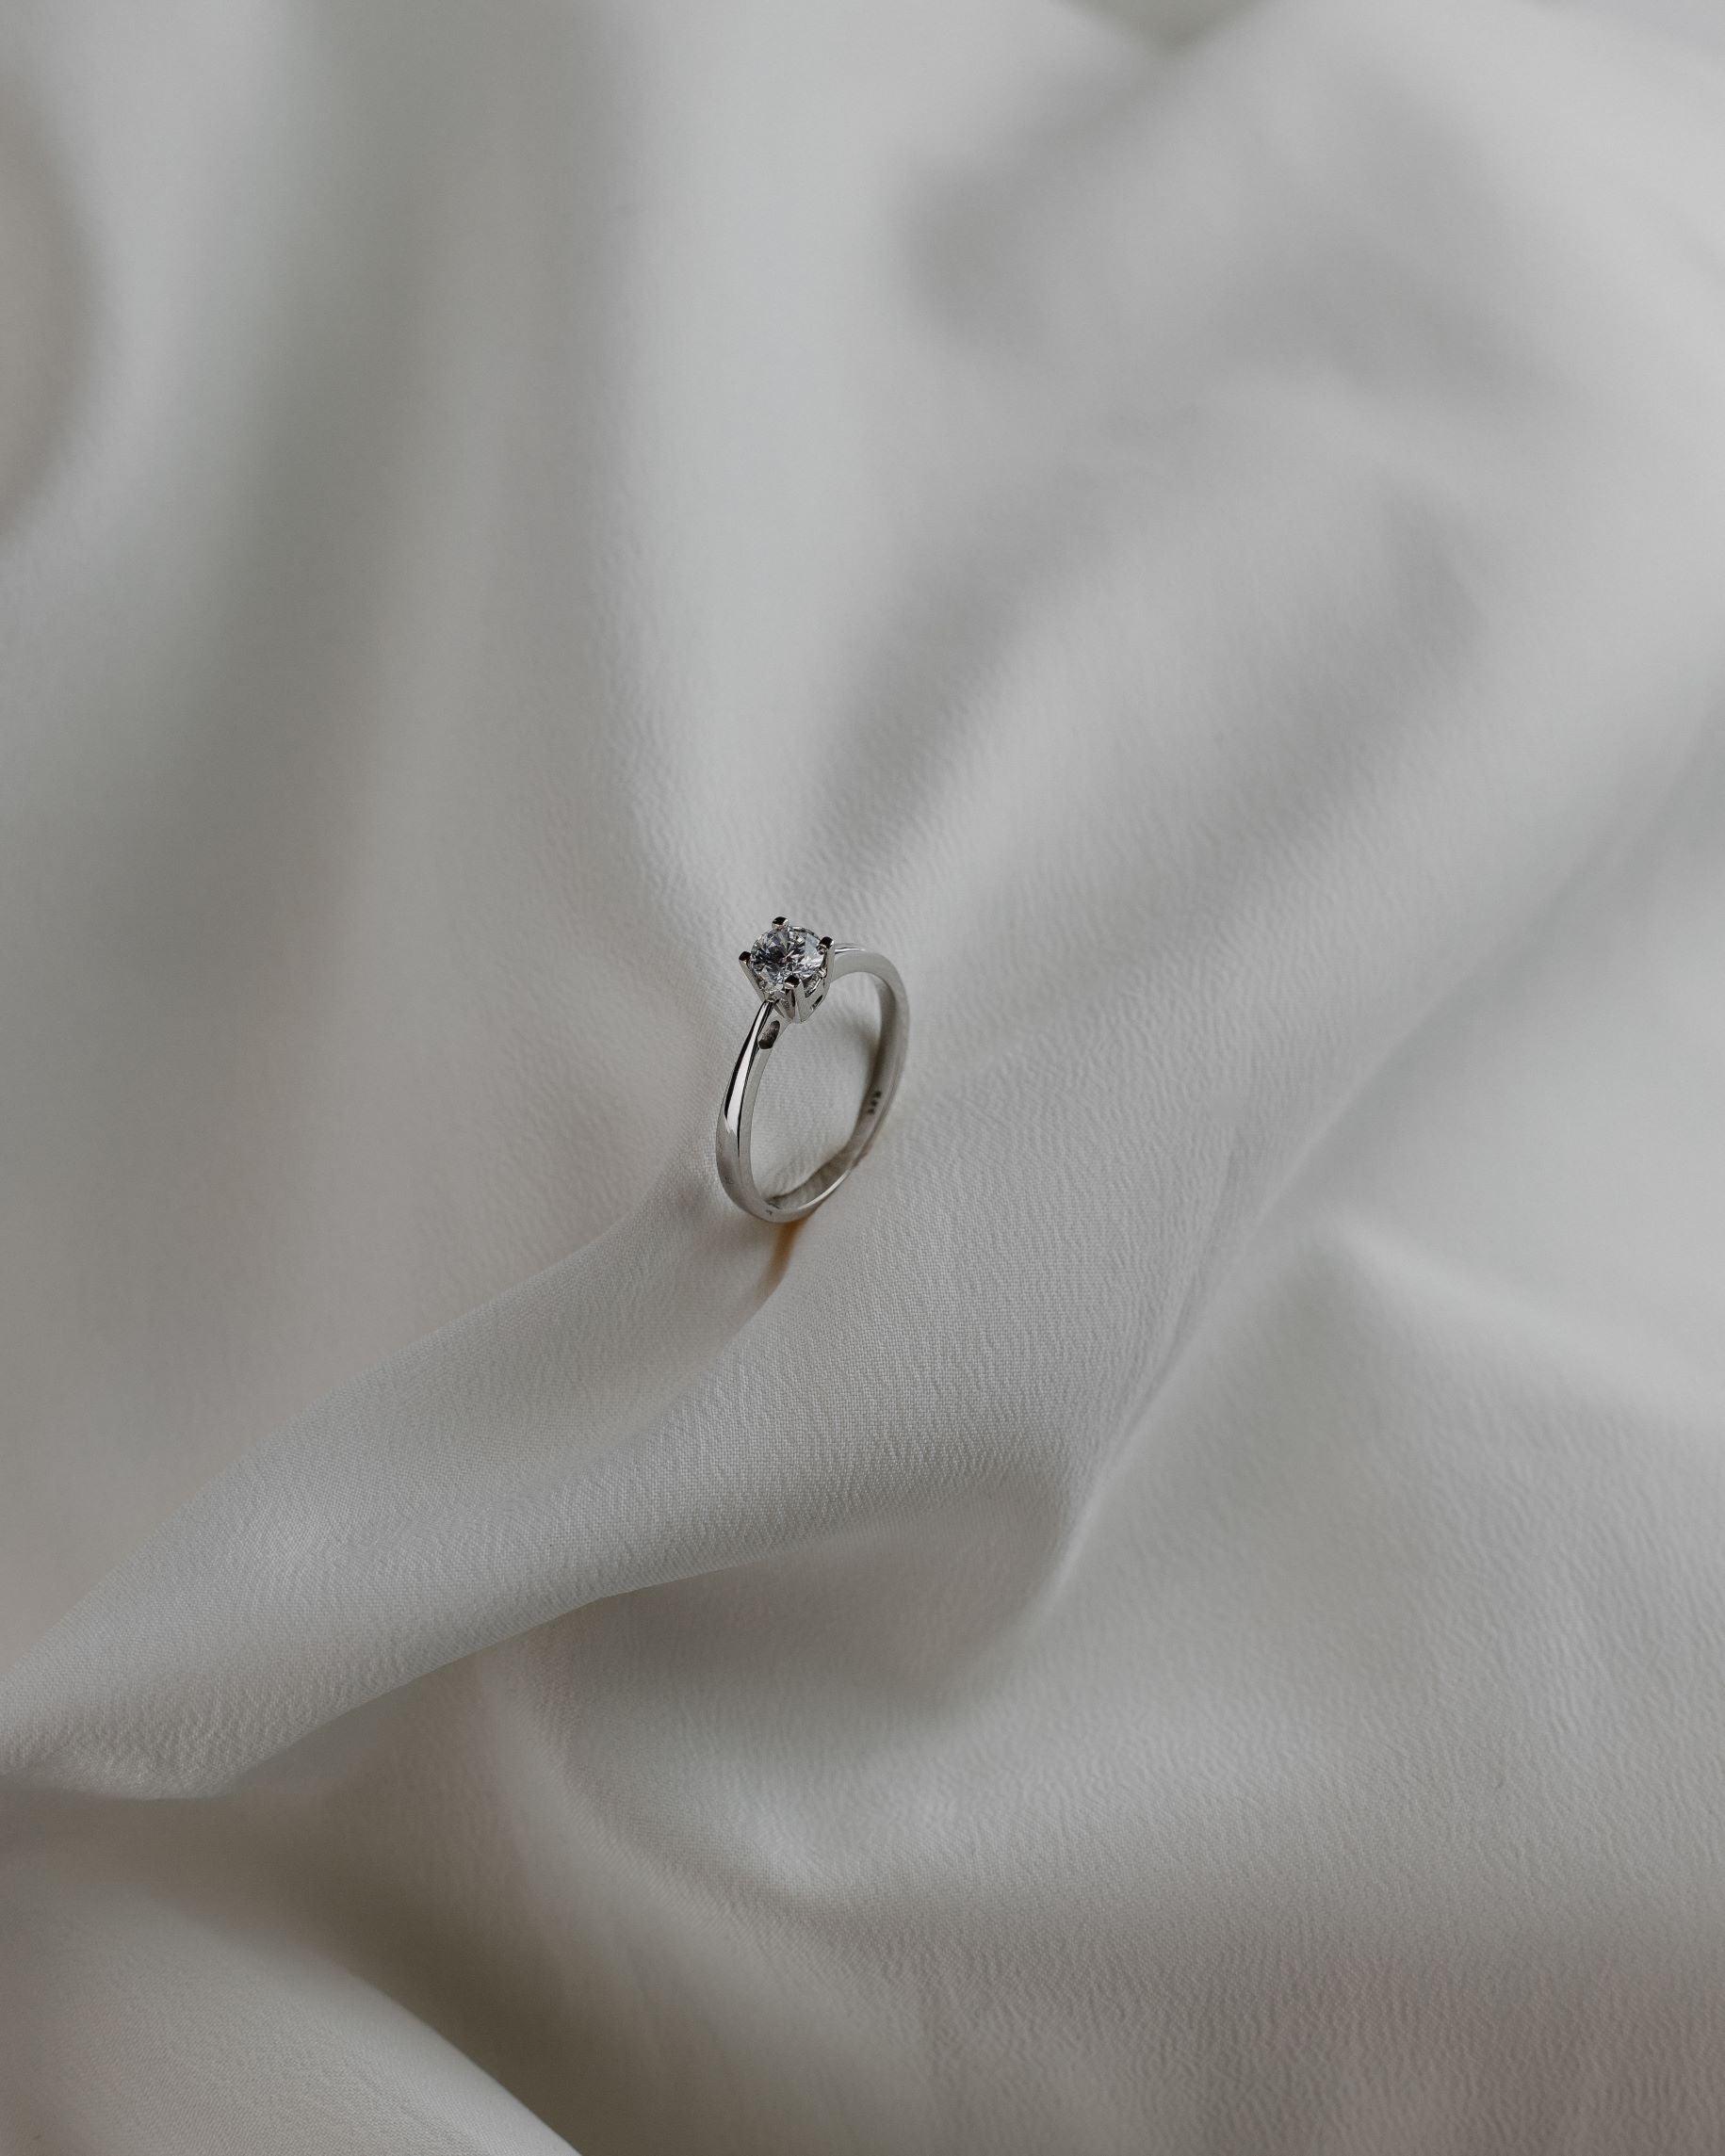 Λευκόχρυσο μονόπετρο με διαμάντι σε καστόνι σχήματος "V" και λεπτομέρεια καρδιάς.